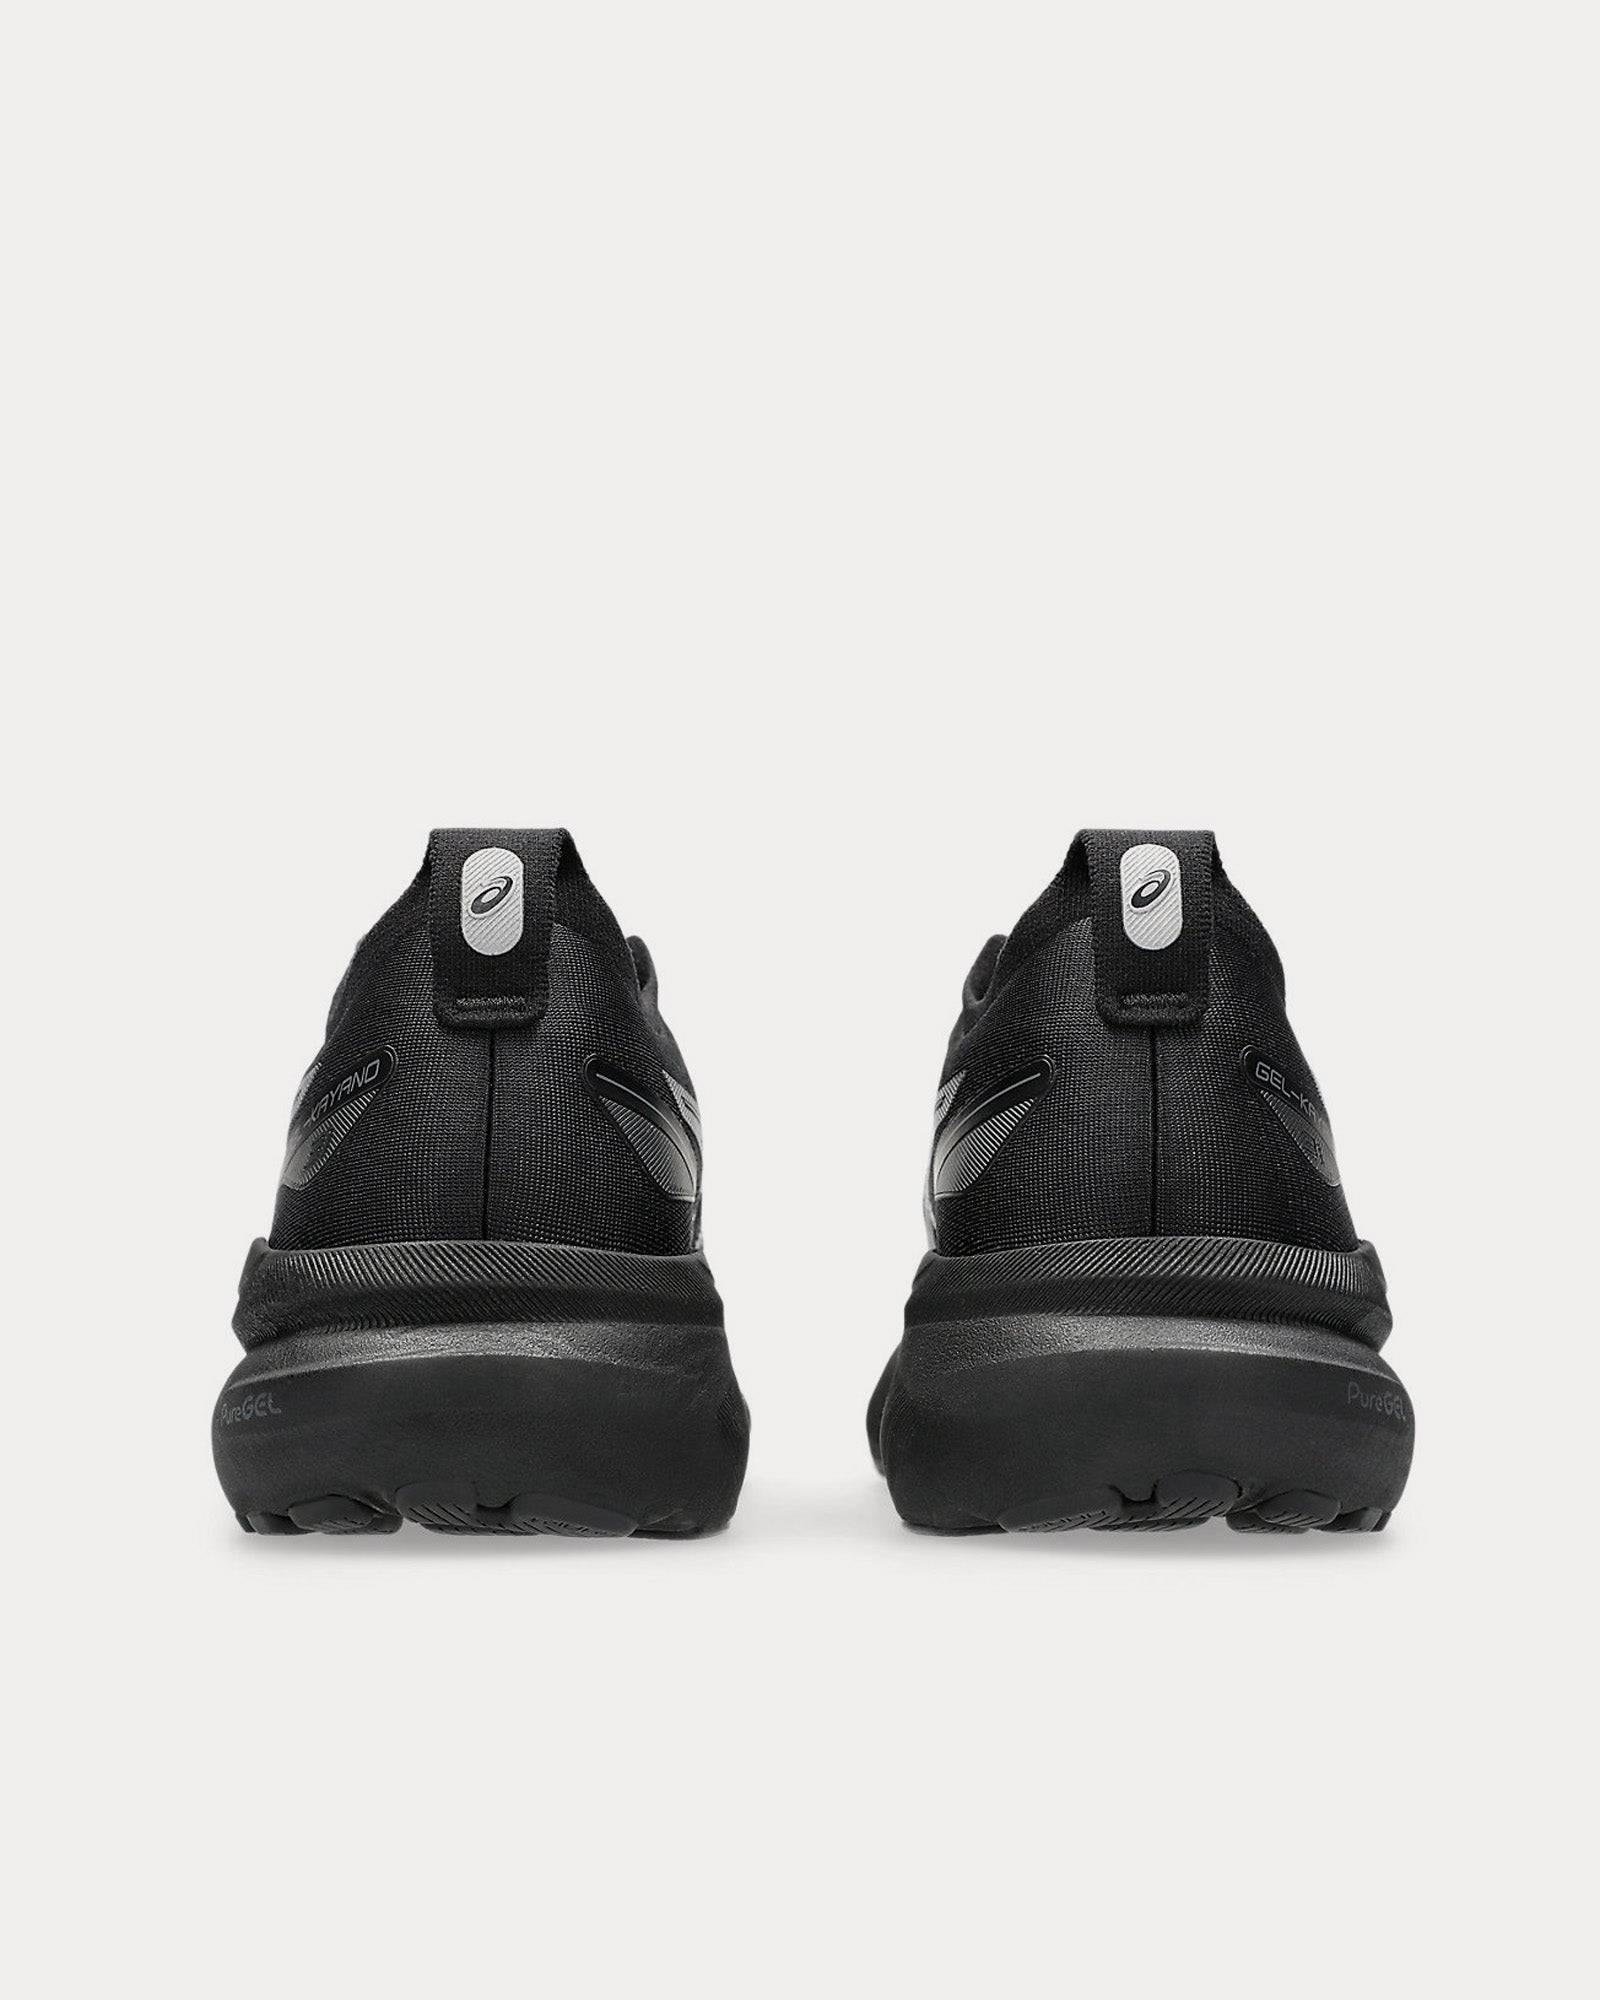 Asics - Gel-Kayano 31 Black / Black Running Shoes